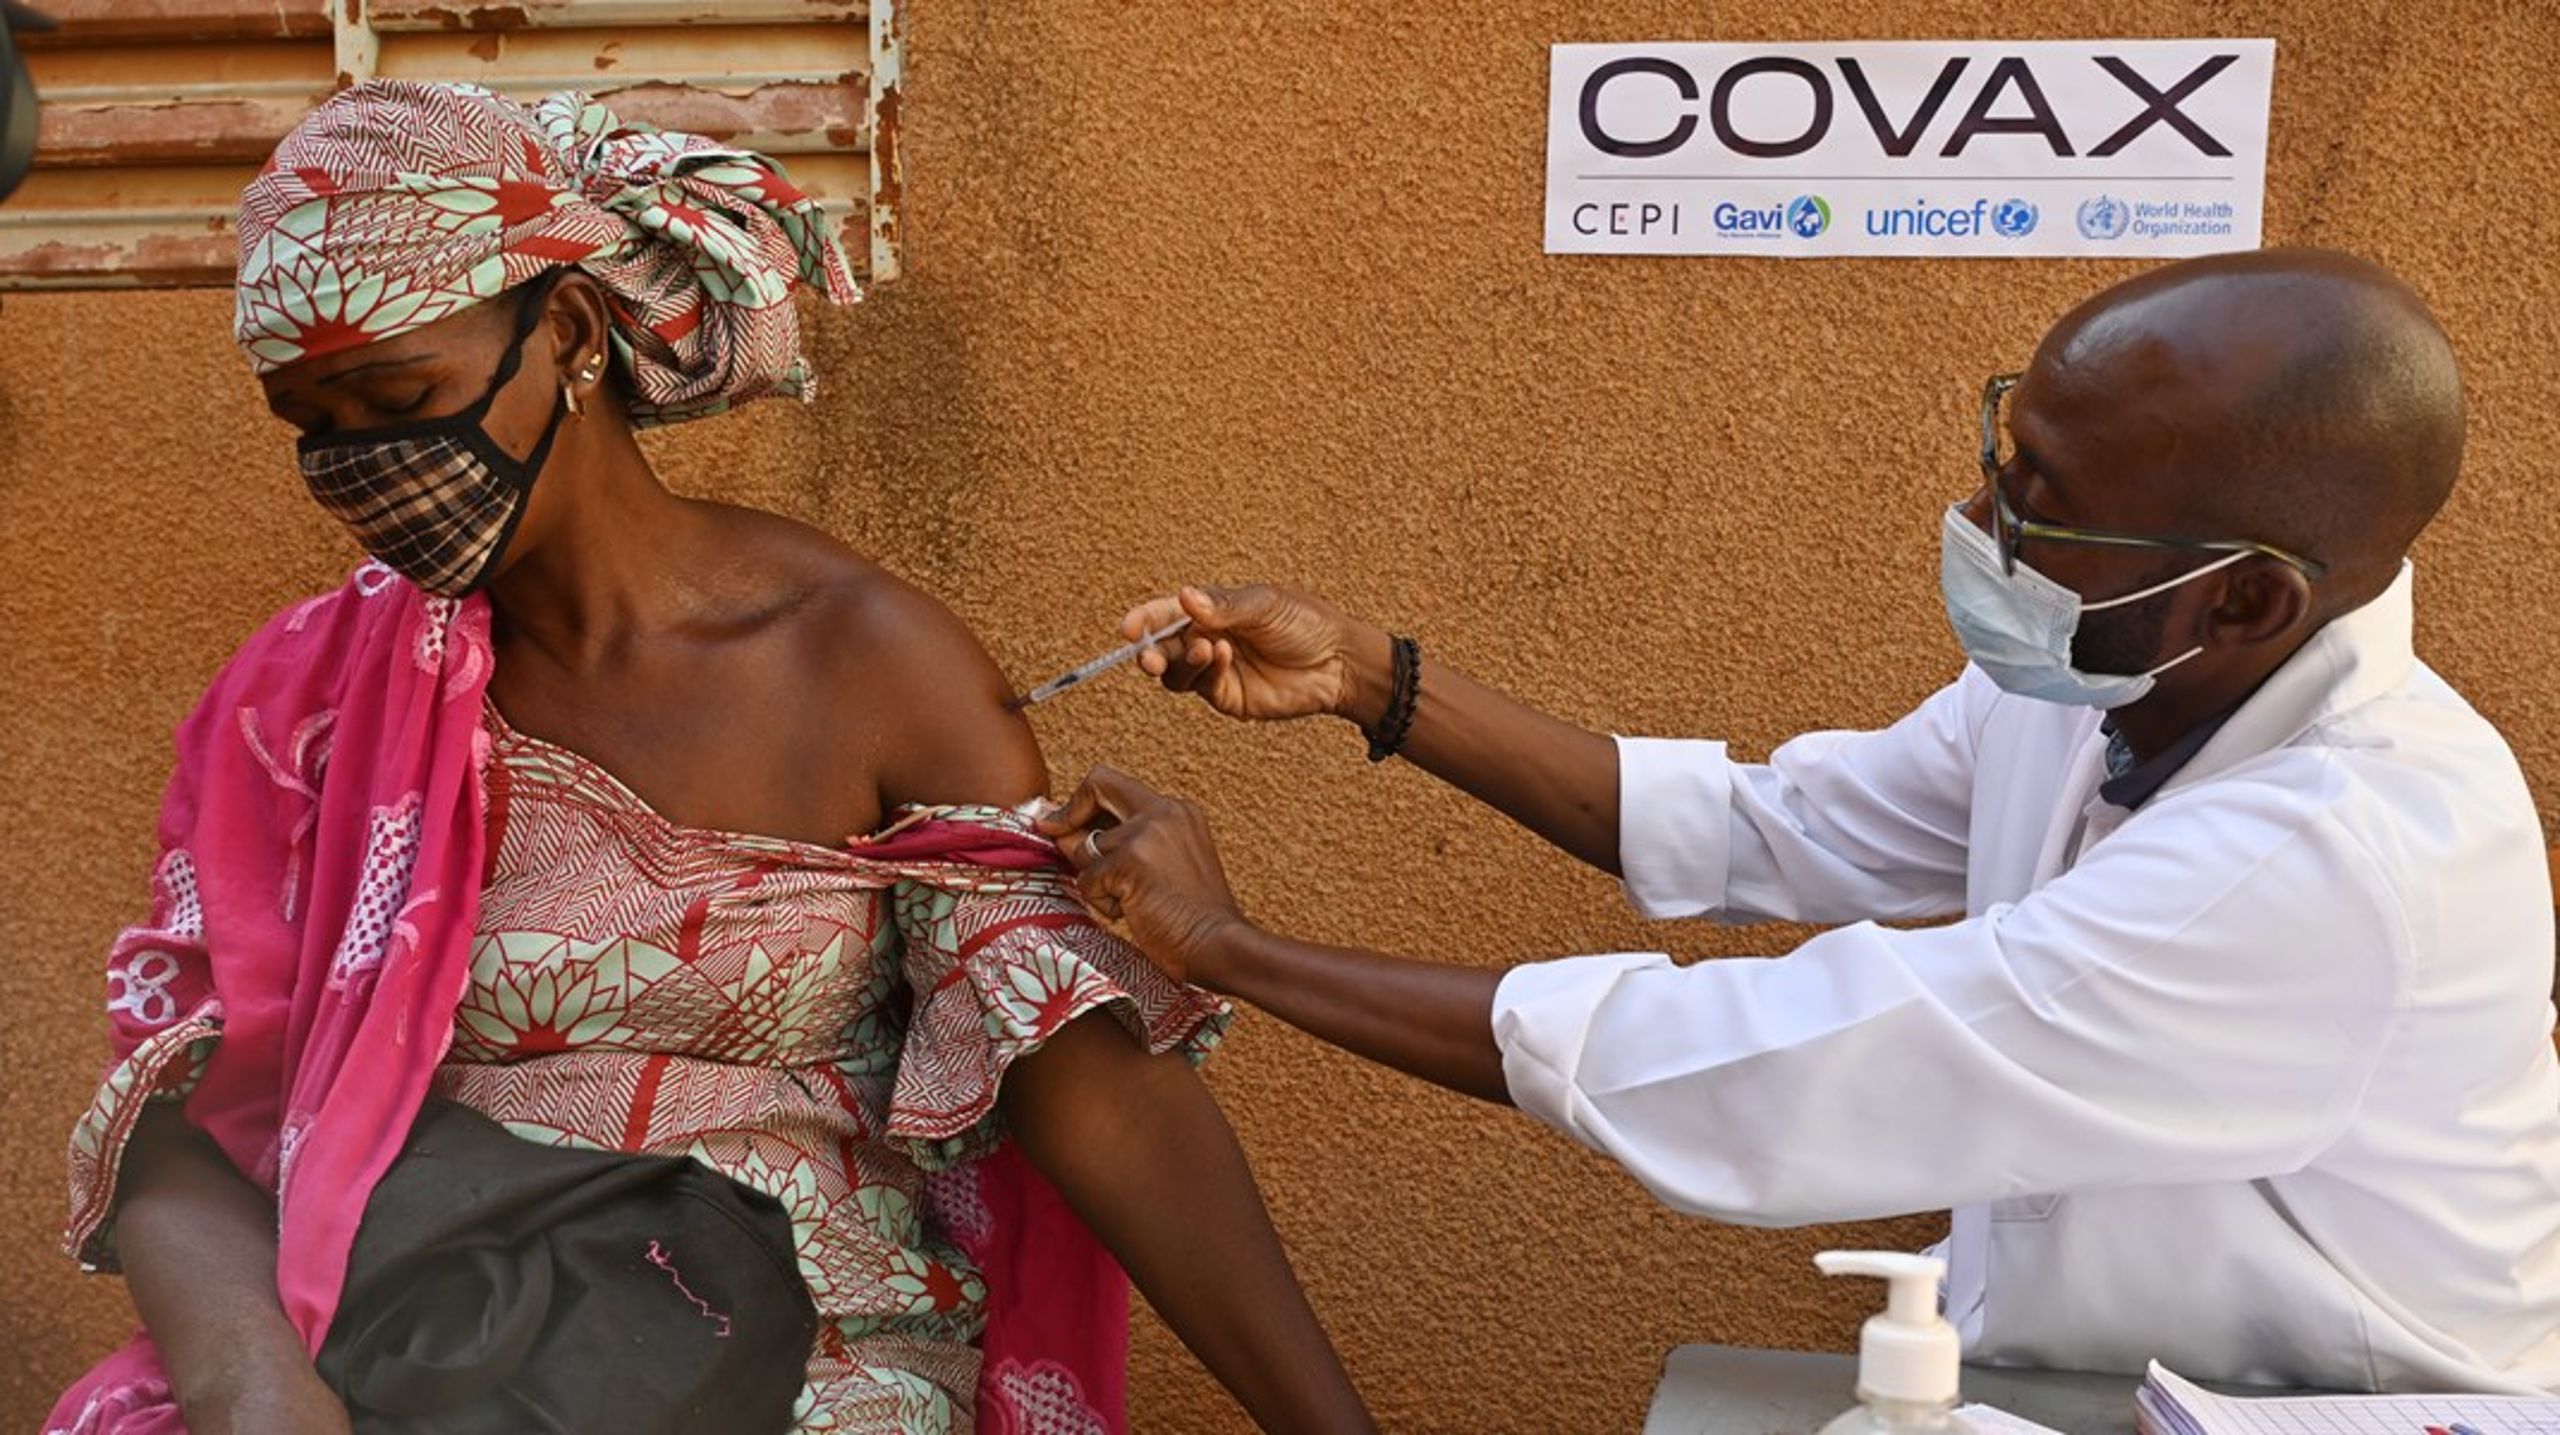 Som en del af den internationale vaccinealliance Covax har Unicef gennem hele pandemien sørget for, at vacciner kommer ud i alle afkroge af verden, skriver&nbsp;Jakob Colville-Ebeling.&nbsp;